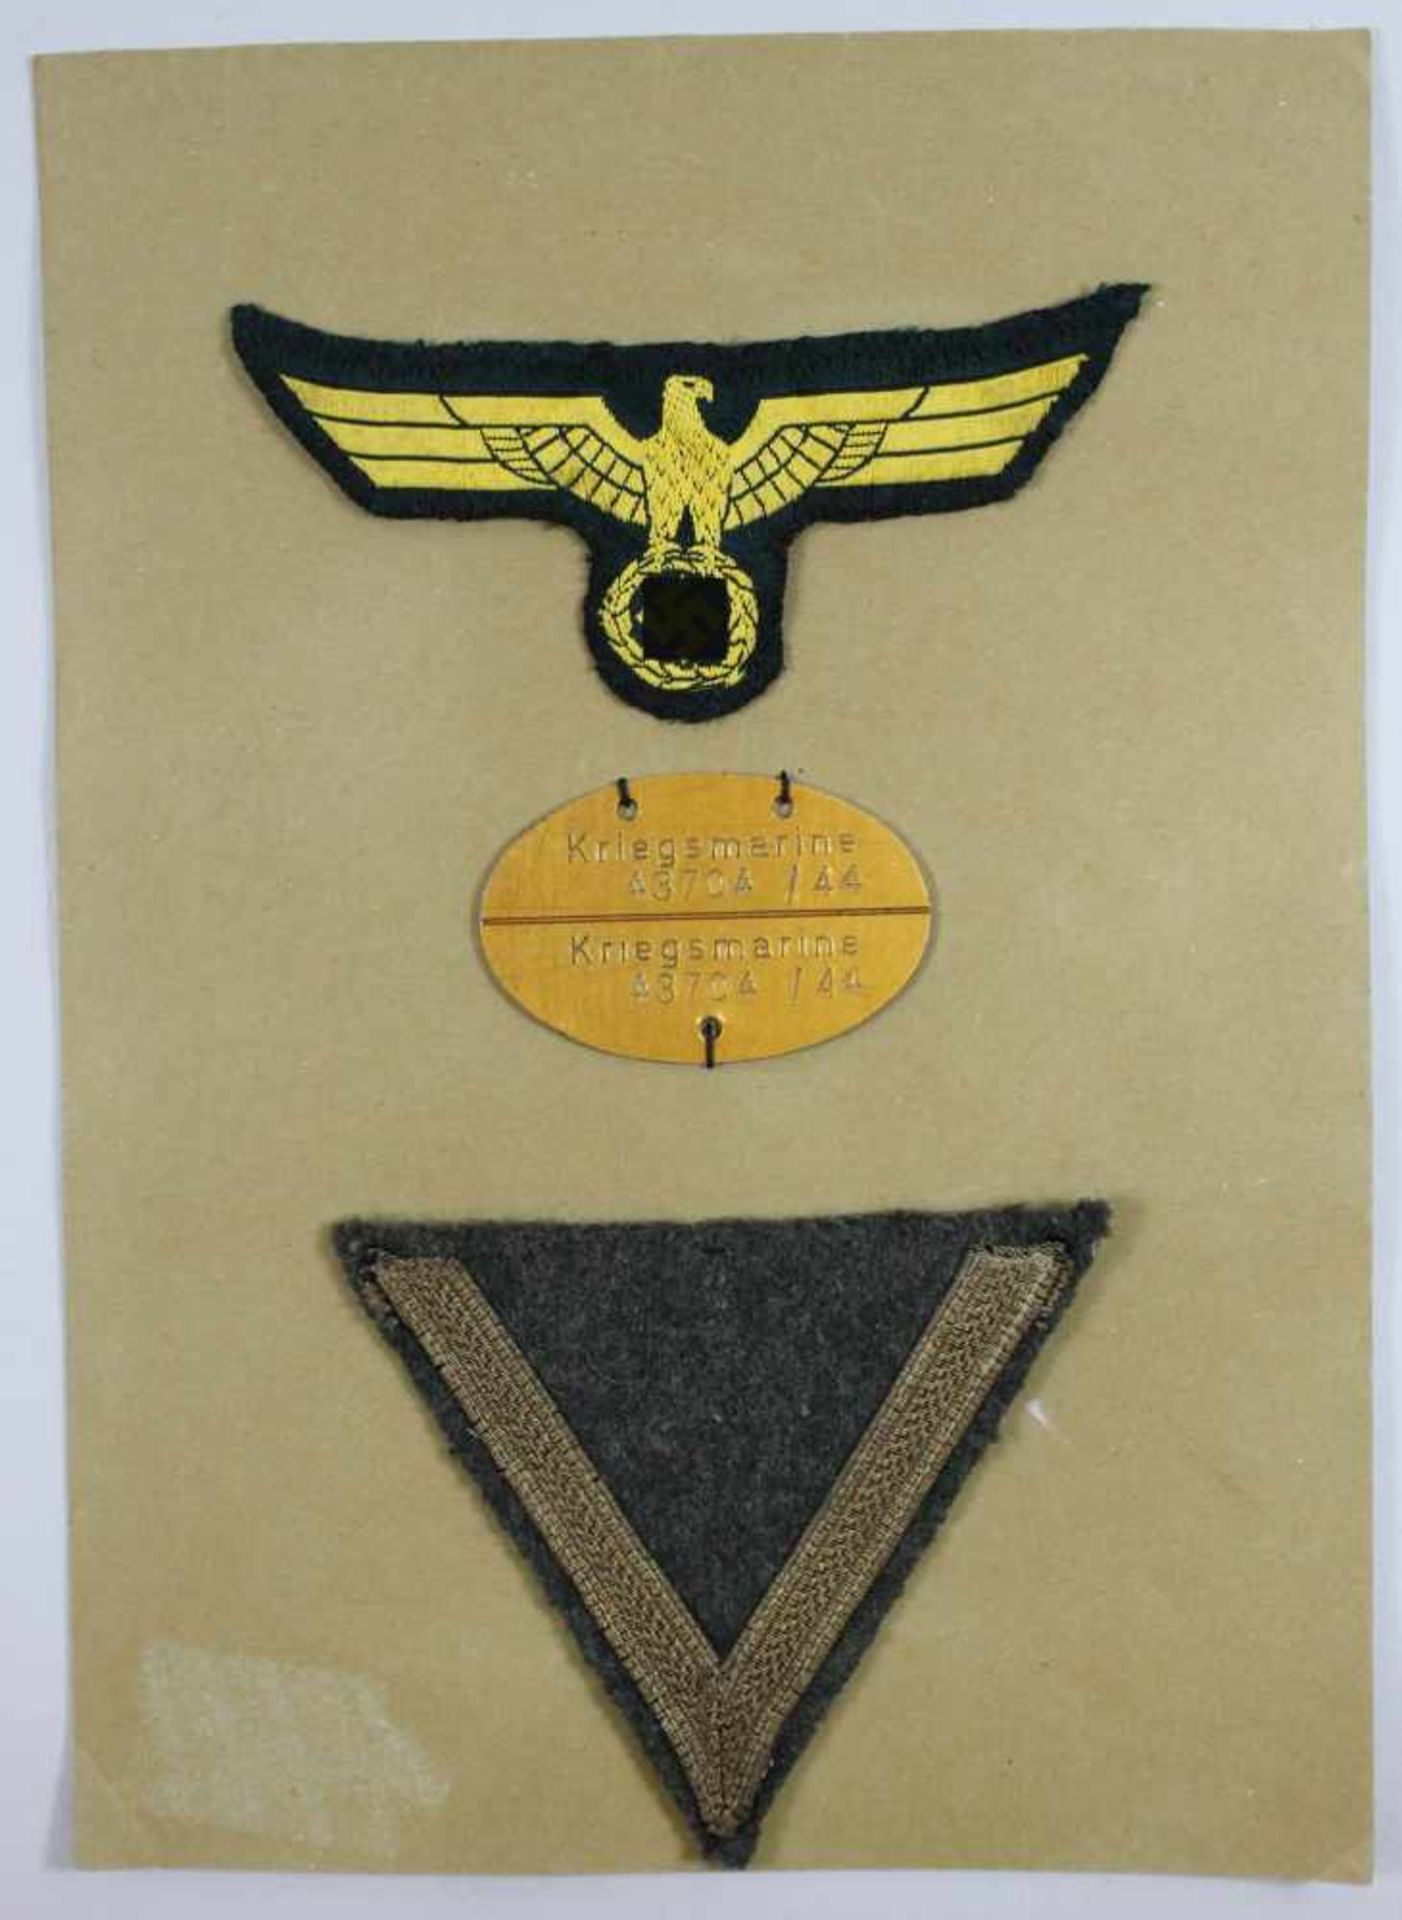 Konv. 2. WK, bestehend aus Uniformaufnäher Reichsadler mit HK, Kriegsmarine Erkennungsmarke